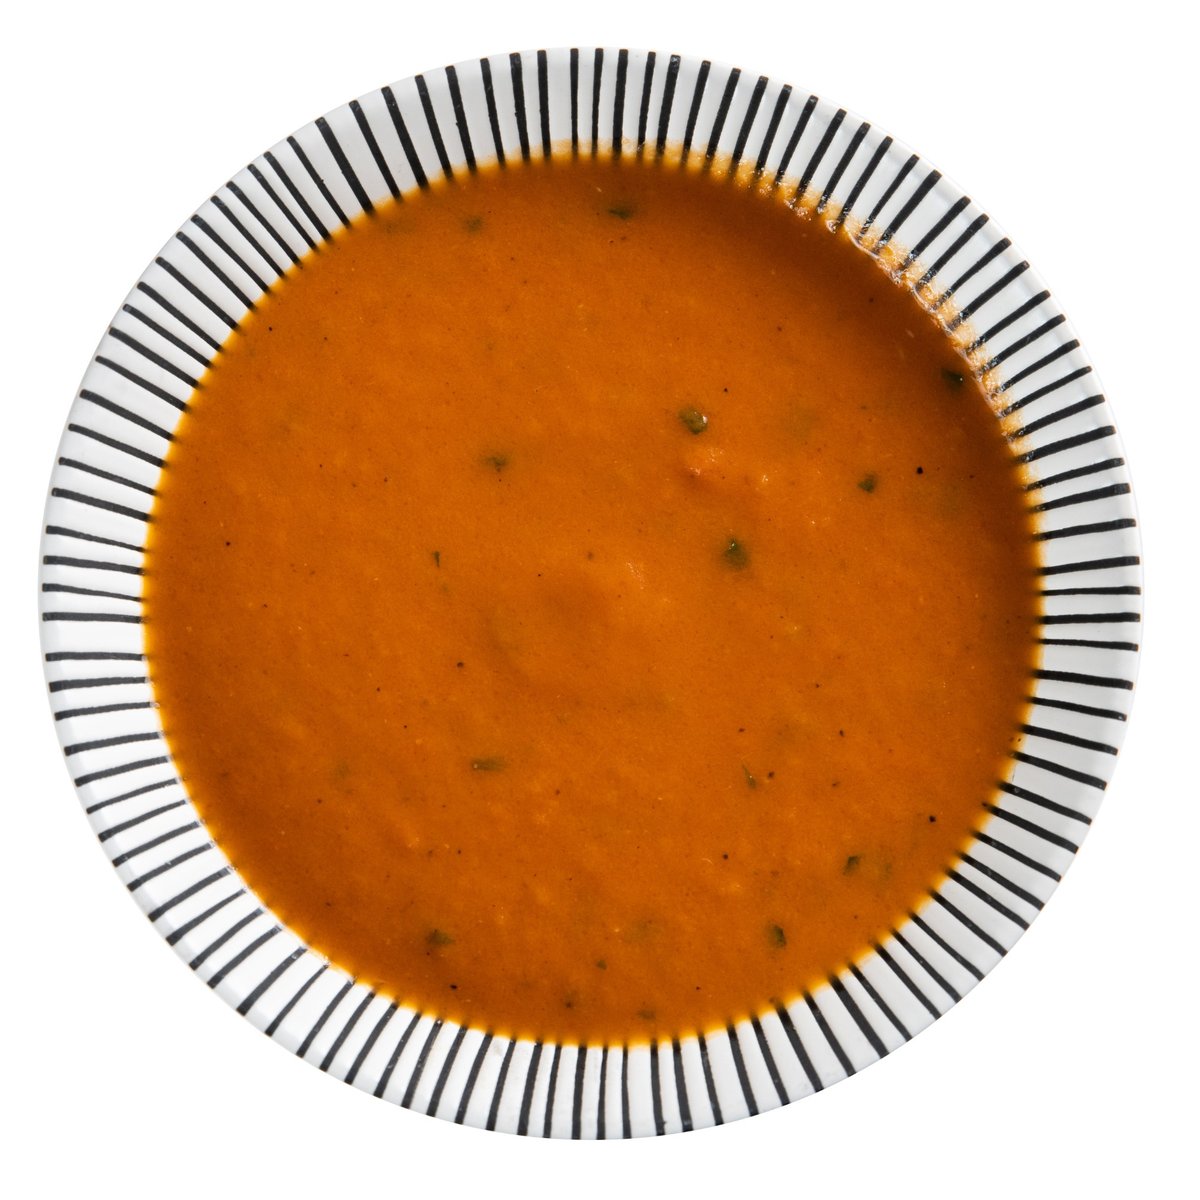 Tomatová polévka s bazalkou od Gianlucy Giardiho (2 porce)